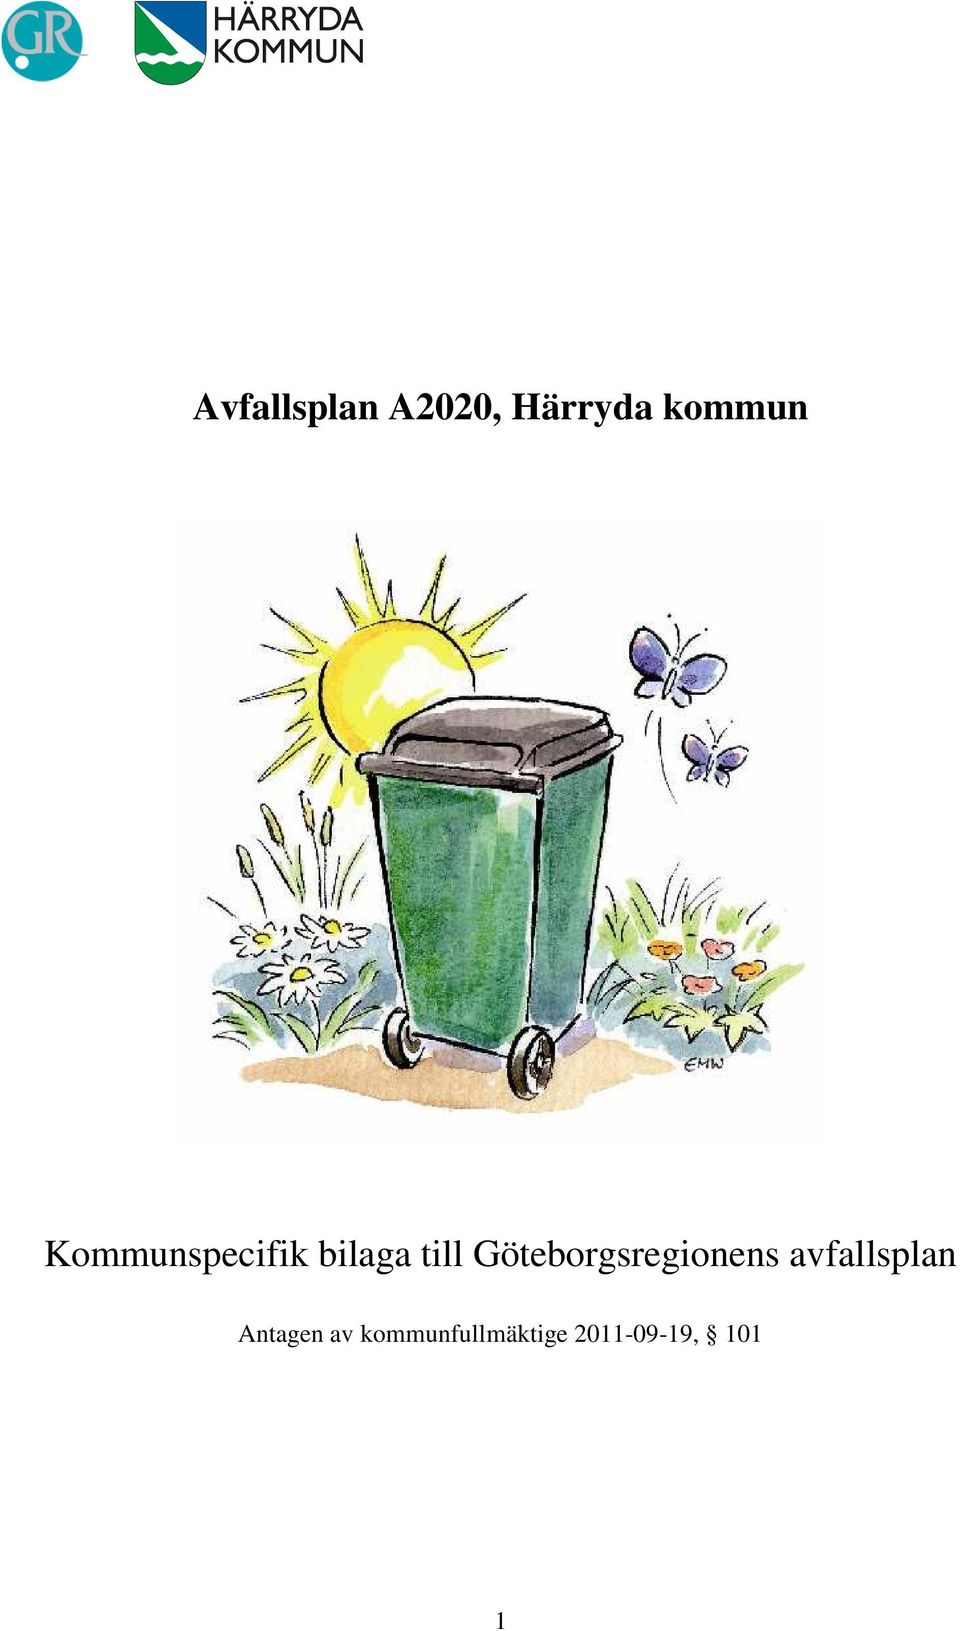 Göteborgsregionens avfallsplan